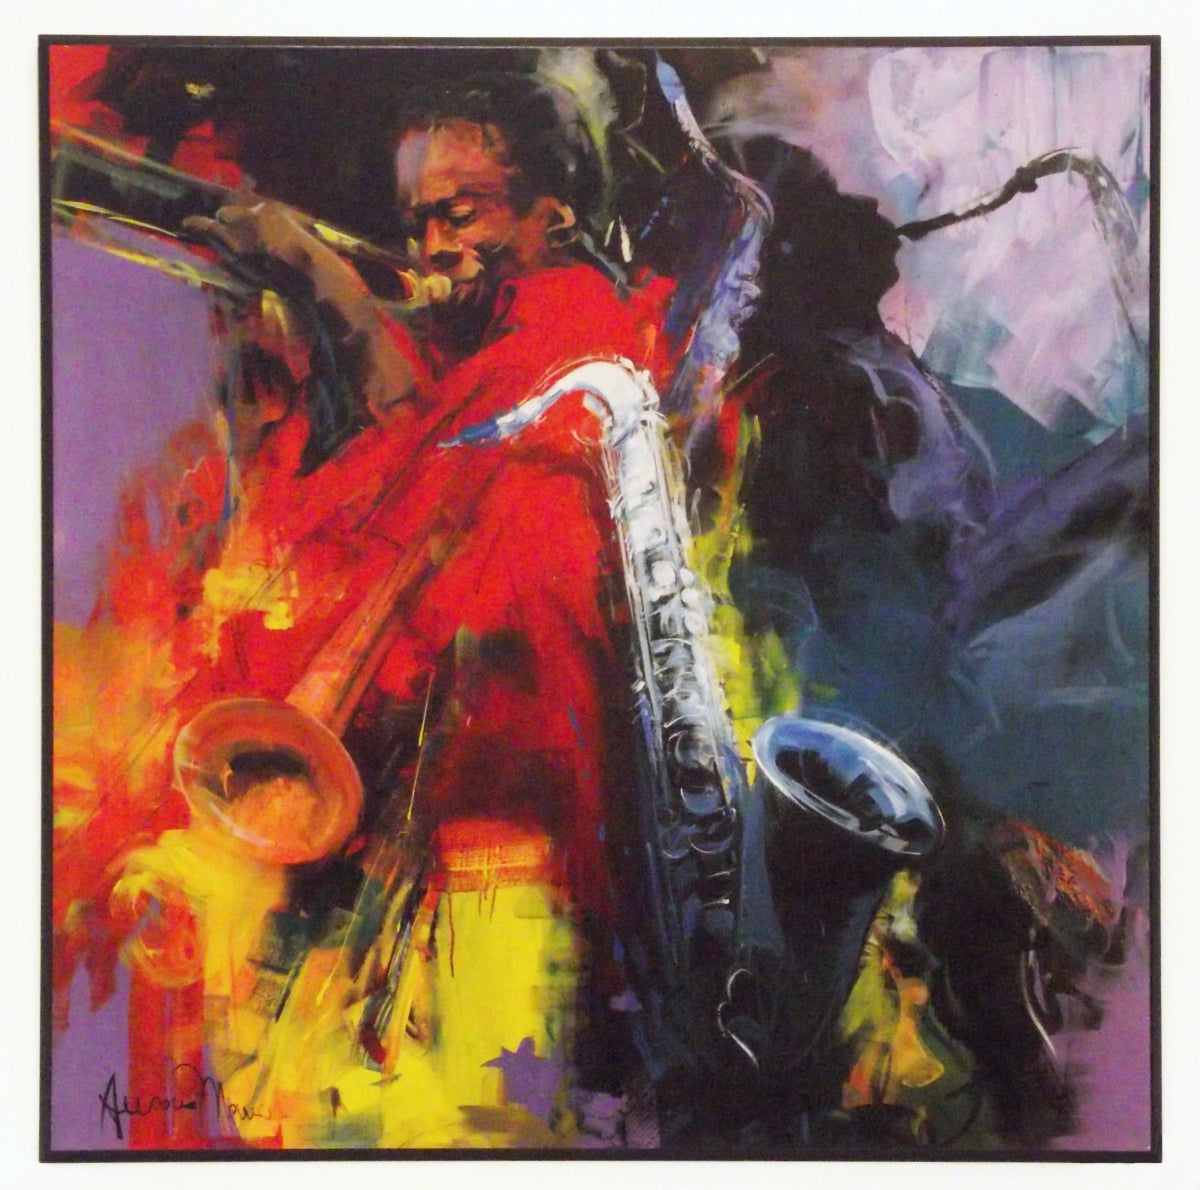 Obraz - Kolorowy Jazz - reprodukcja AMS6962 na płycie 70 x70 cm. - Obrazy Reprodukcje Ramy | ergopaul.pl